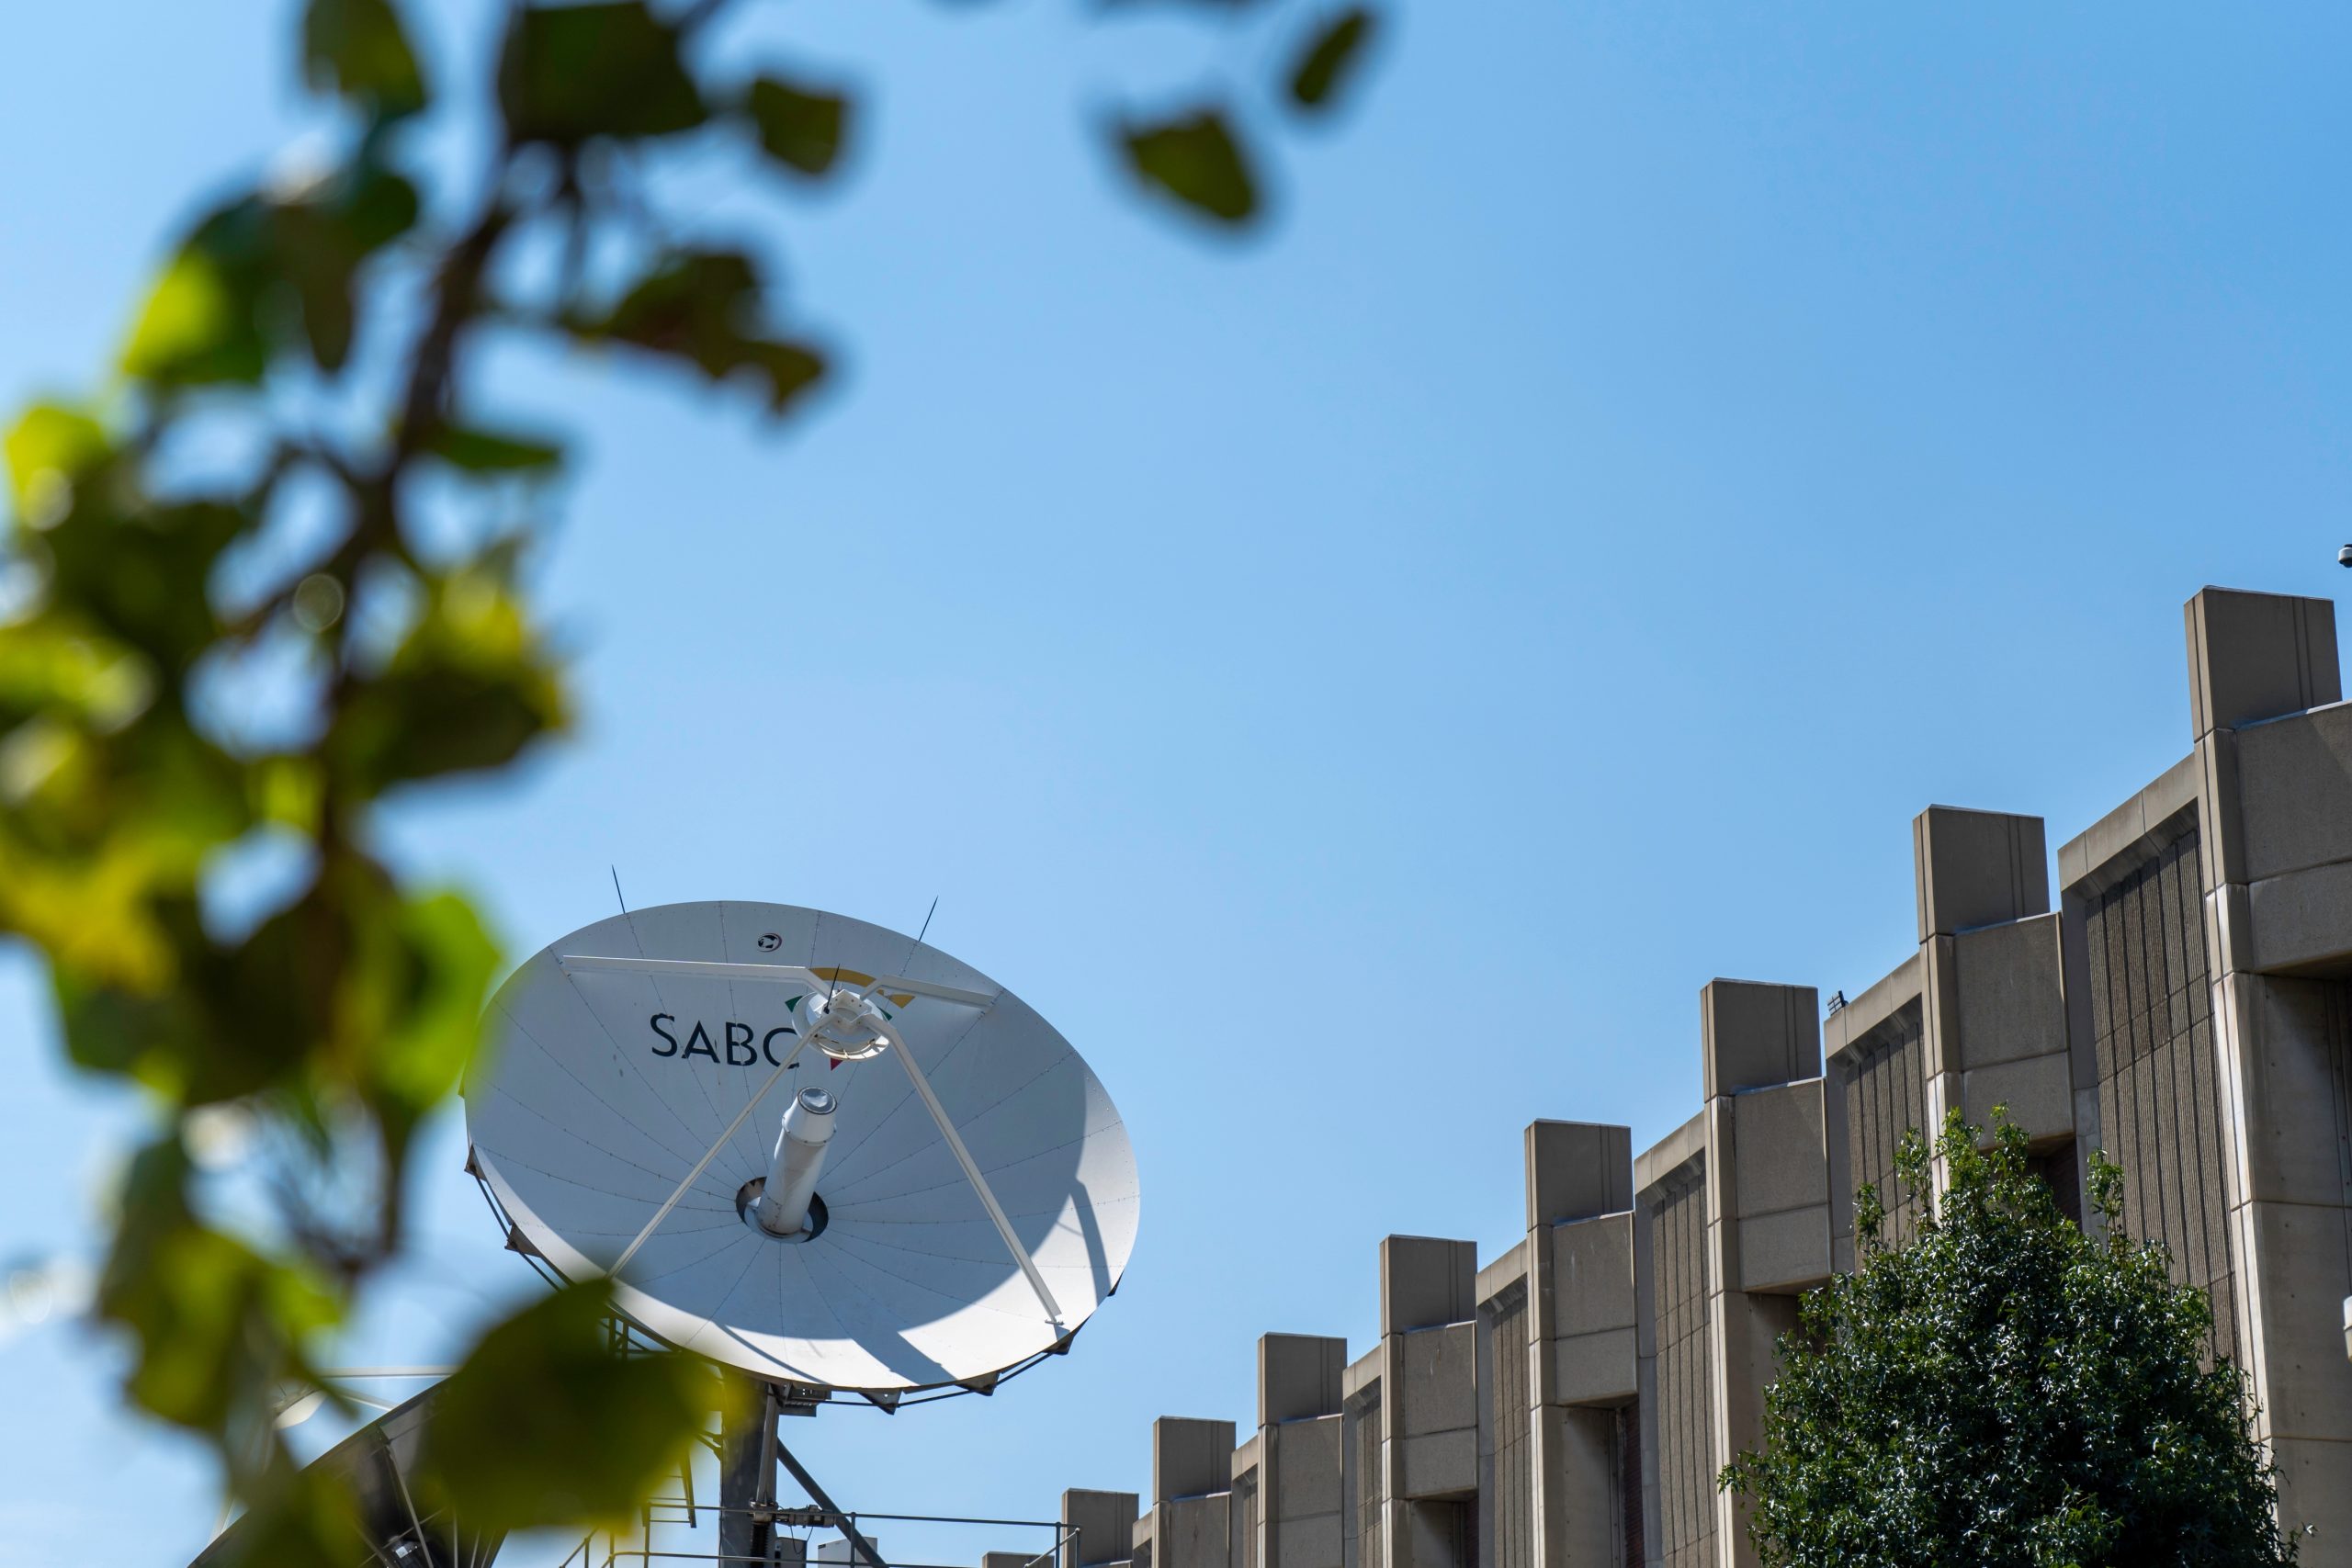 SABC satellite